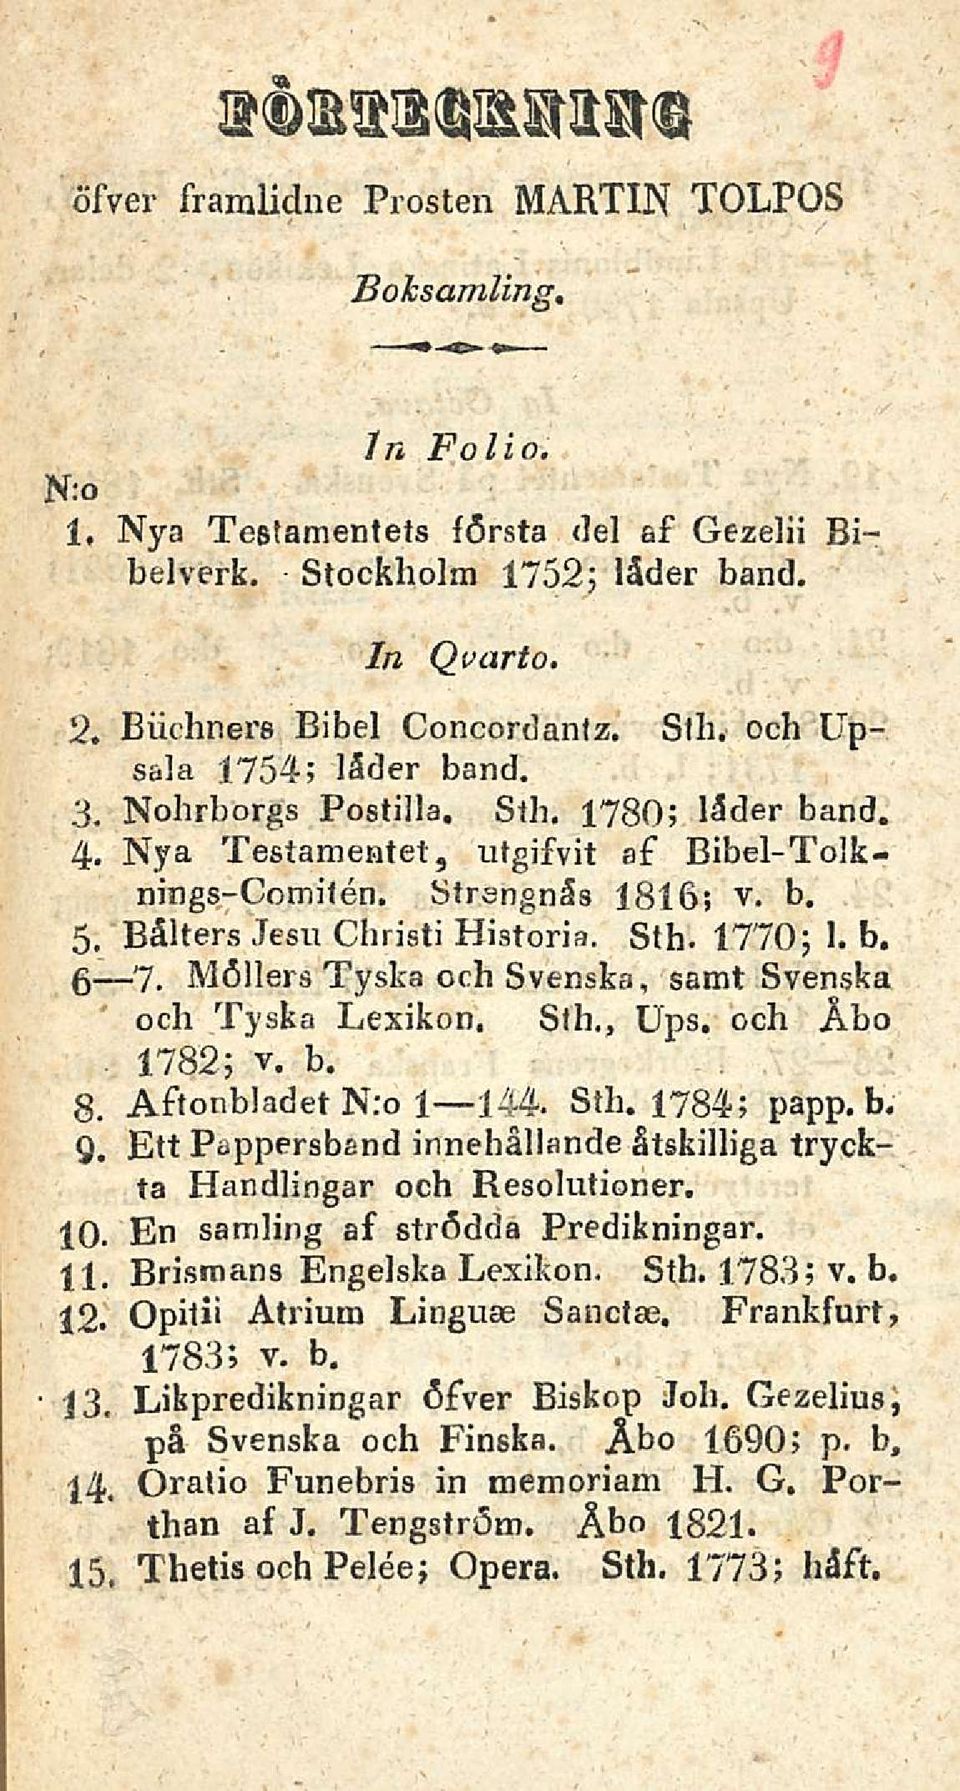 b. g 7. Möllers Tyska och Svenska, samt Svenska och Tyska Lexikon. Slh., Ups, och Åbo 1782; v. b. 8. Aftonbladet N:o 1 144. Sth. 1784; papp. b. Q.